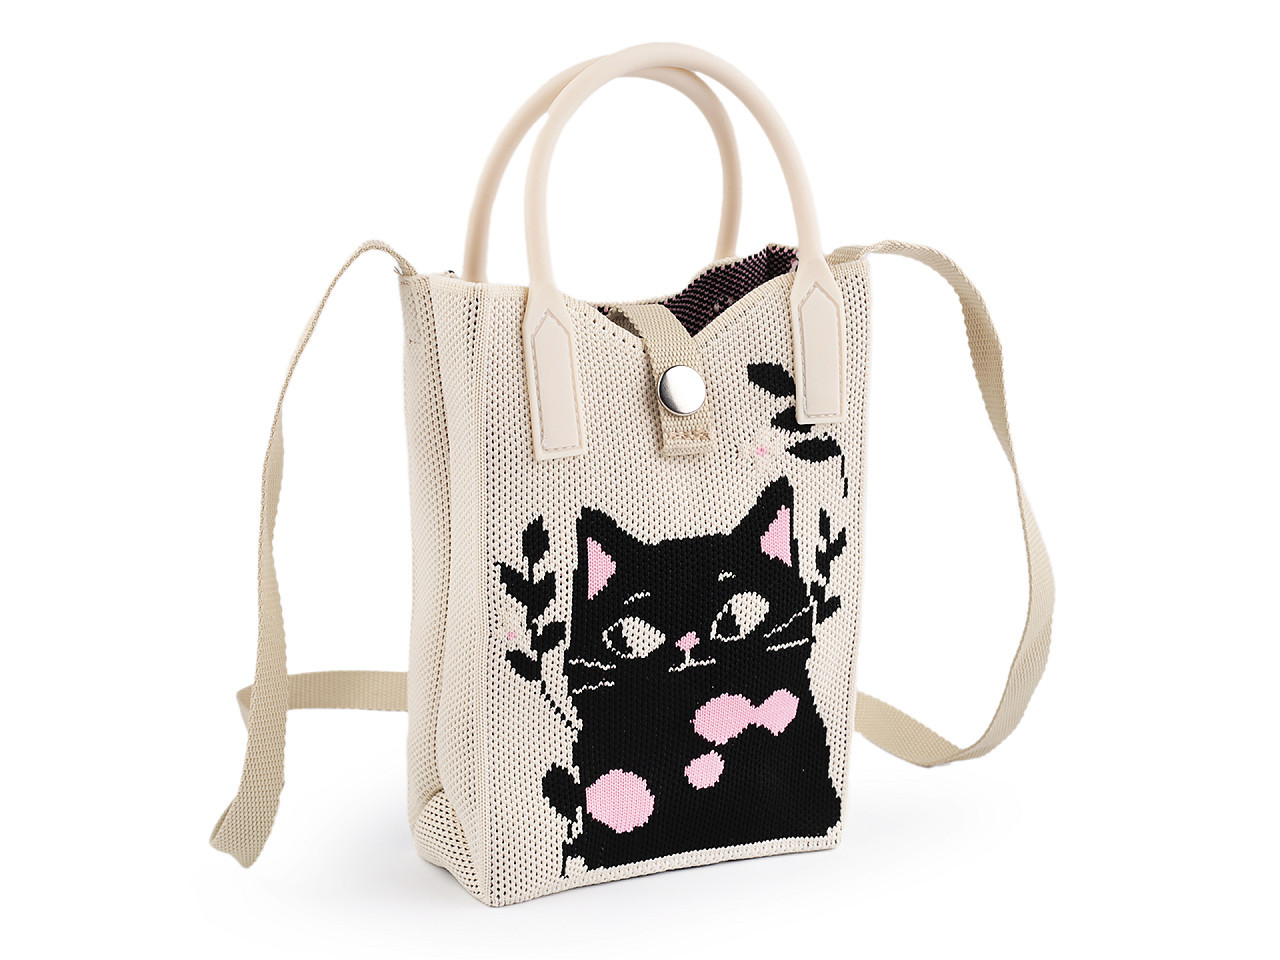 Dívčí textilní kabelka / taška kočka 12x18 cm, barva 1 režná